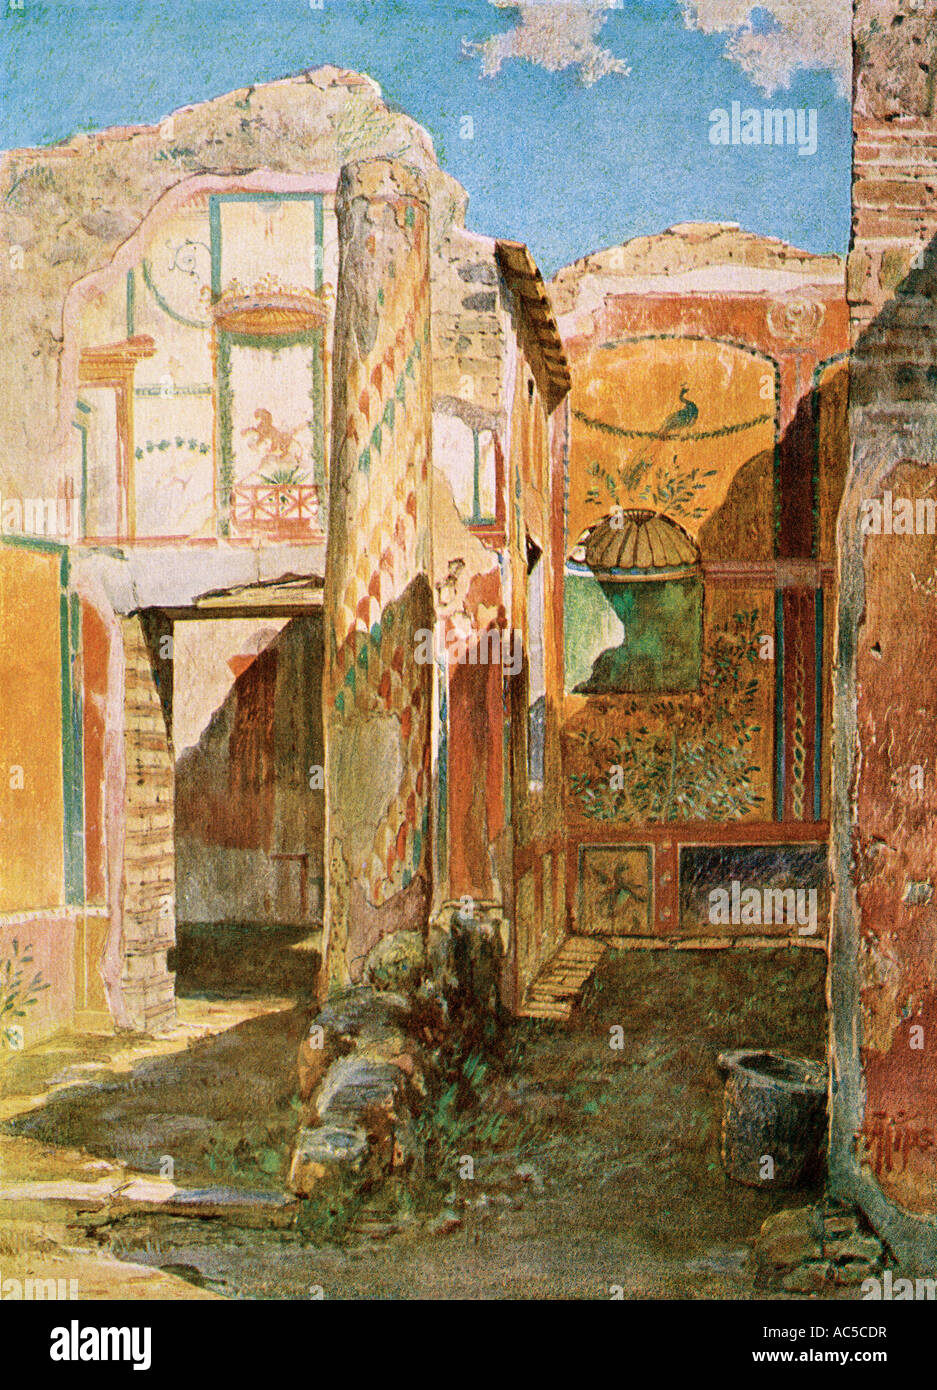 Vestiges d'un home intérieur à Pompéi de l'Empire romain période enfouie dans l'éruption du Vésuve. Lithographie couleur Banque D'Images